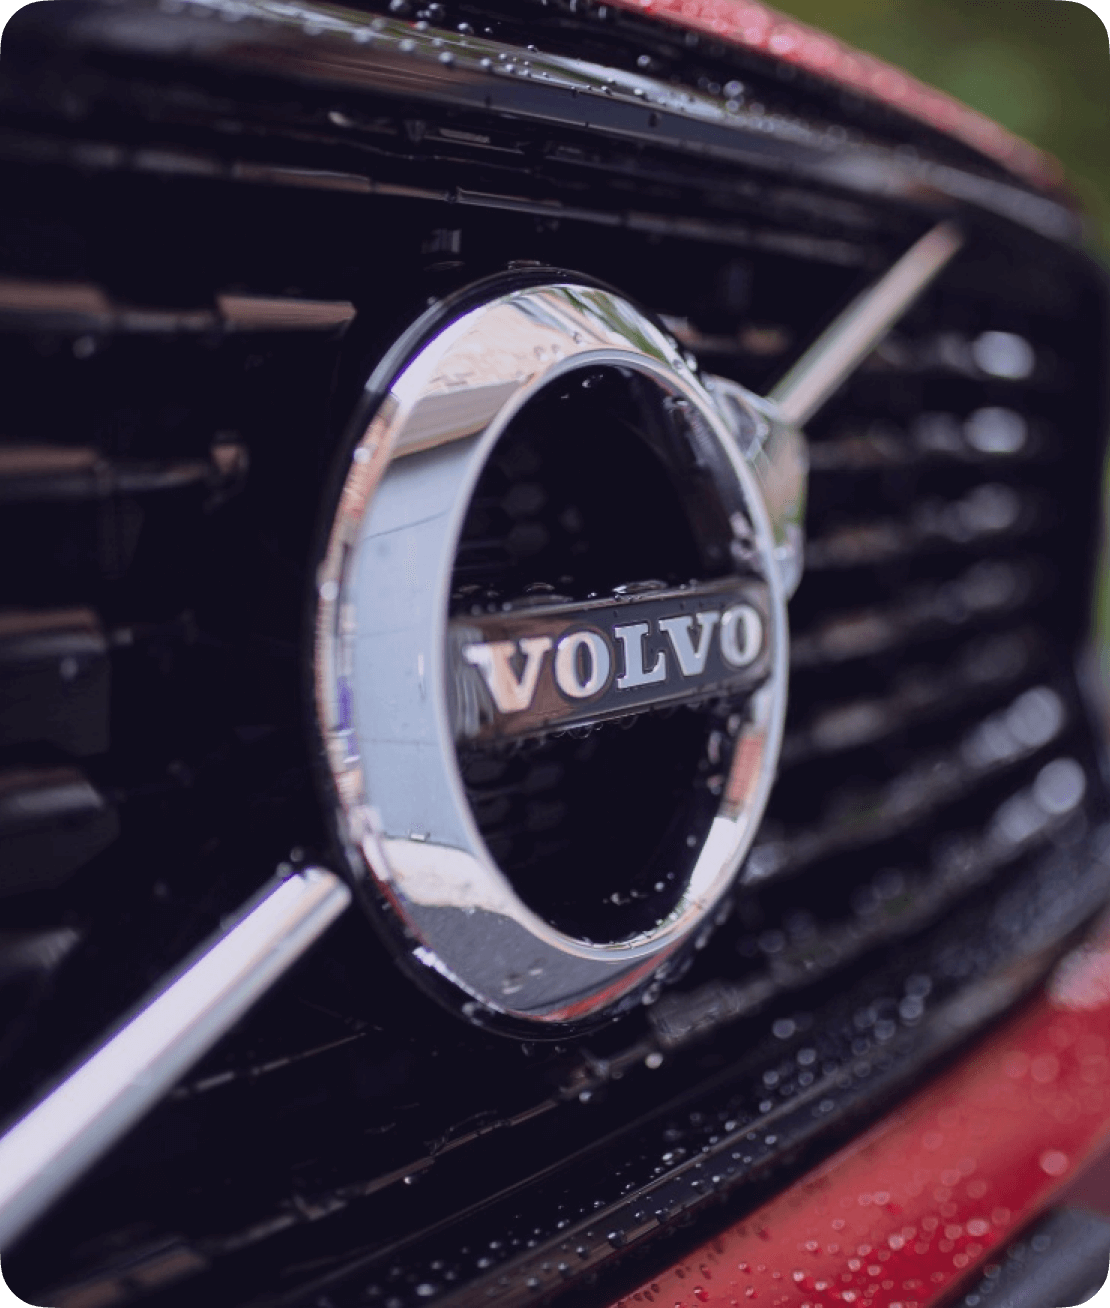 Выкуп Volvo в Новосибирске: цена | Срочно продать автомобиль Вольво дорого